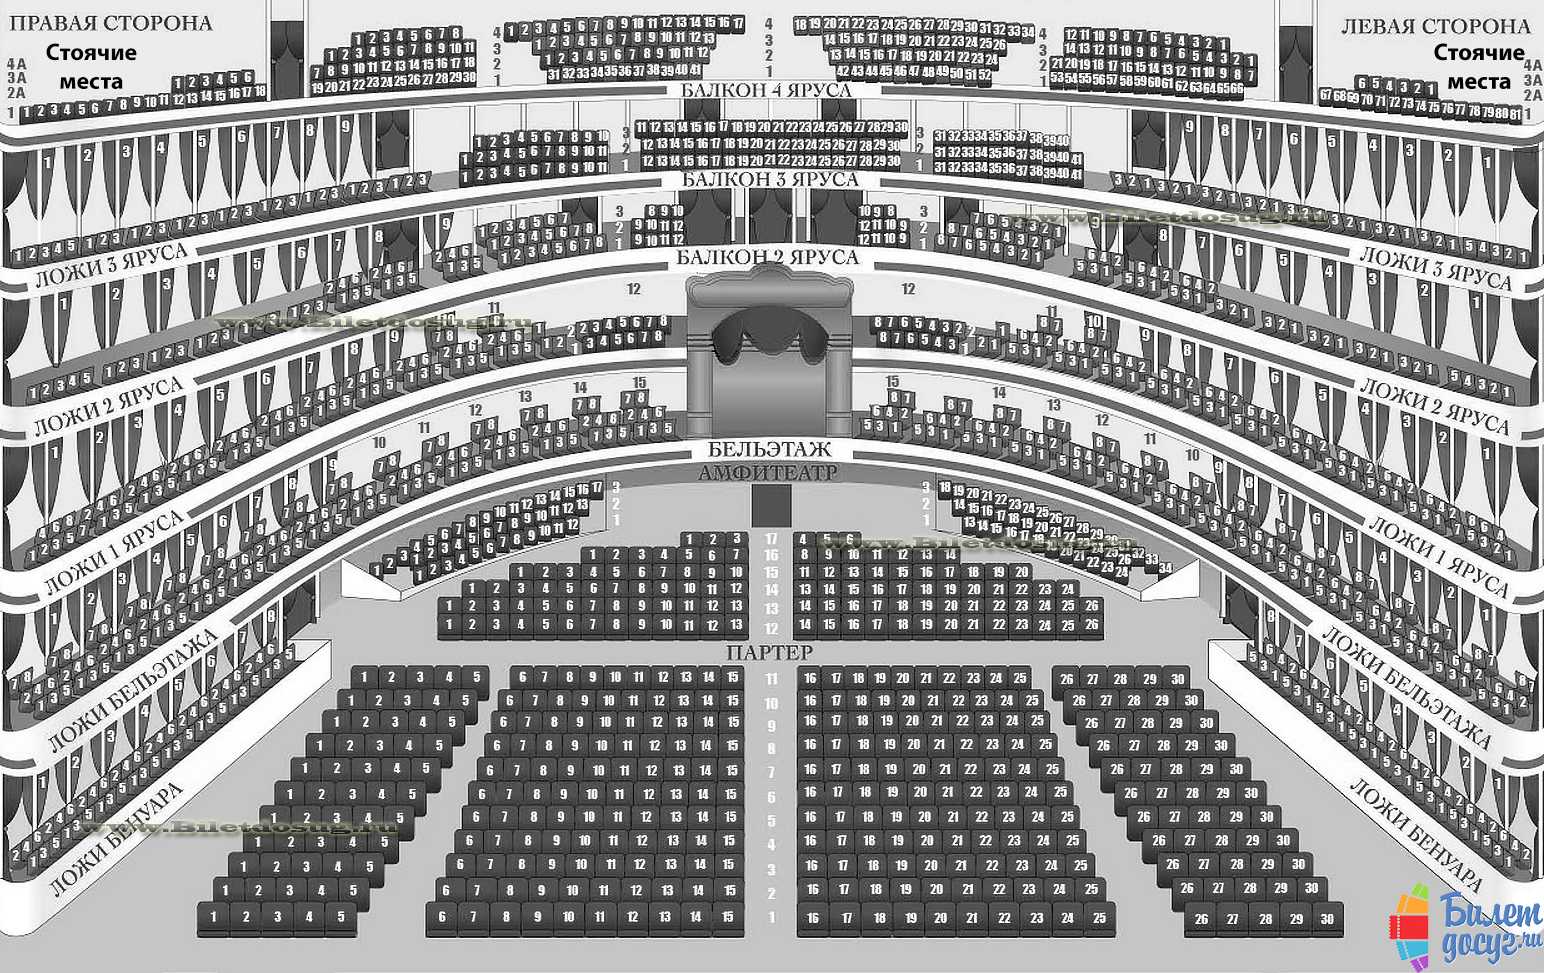 Схема нового зала большого театра